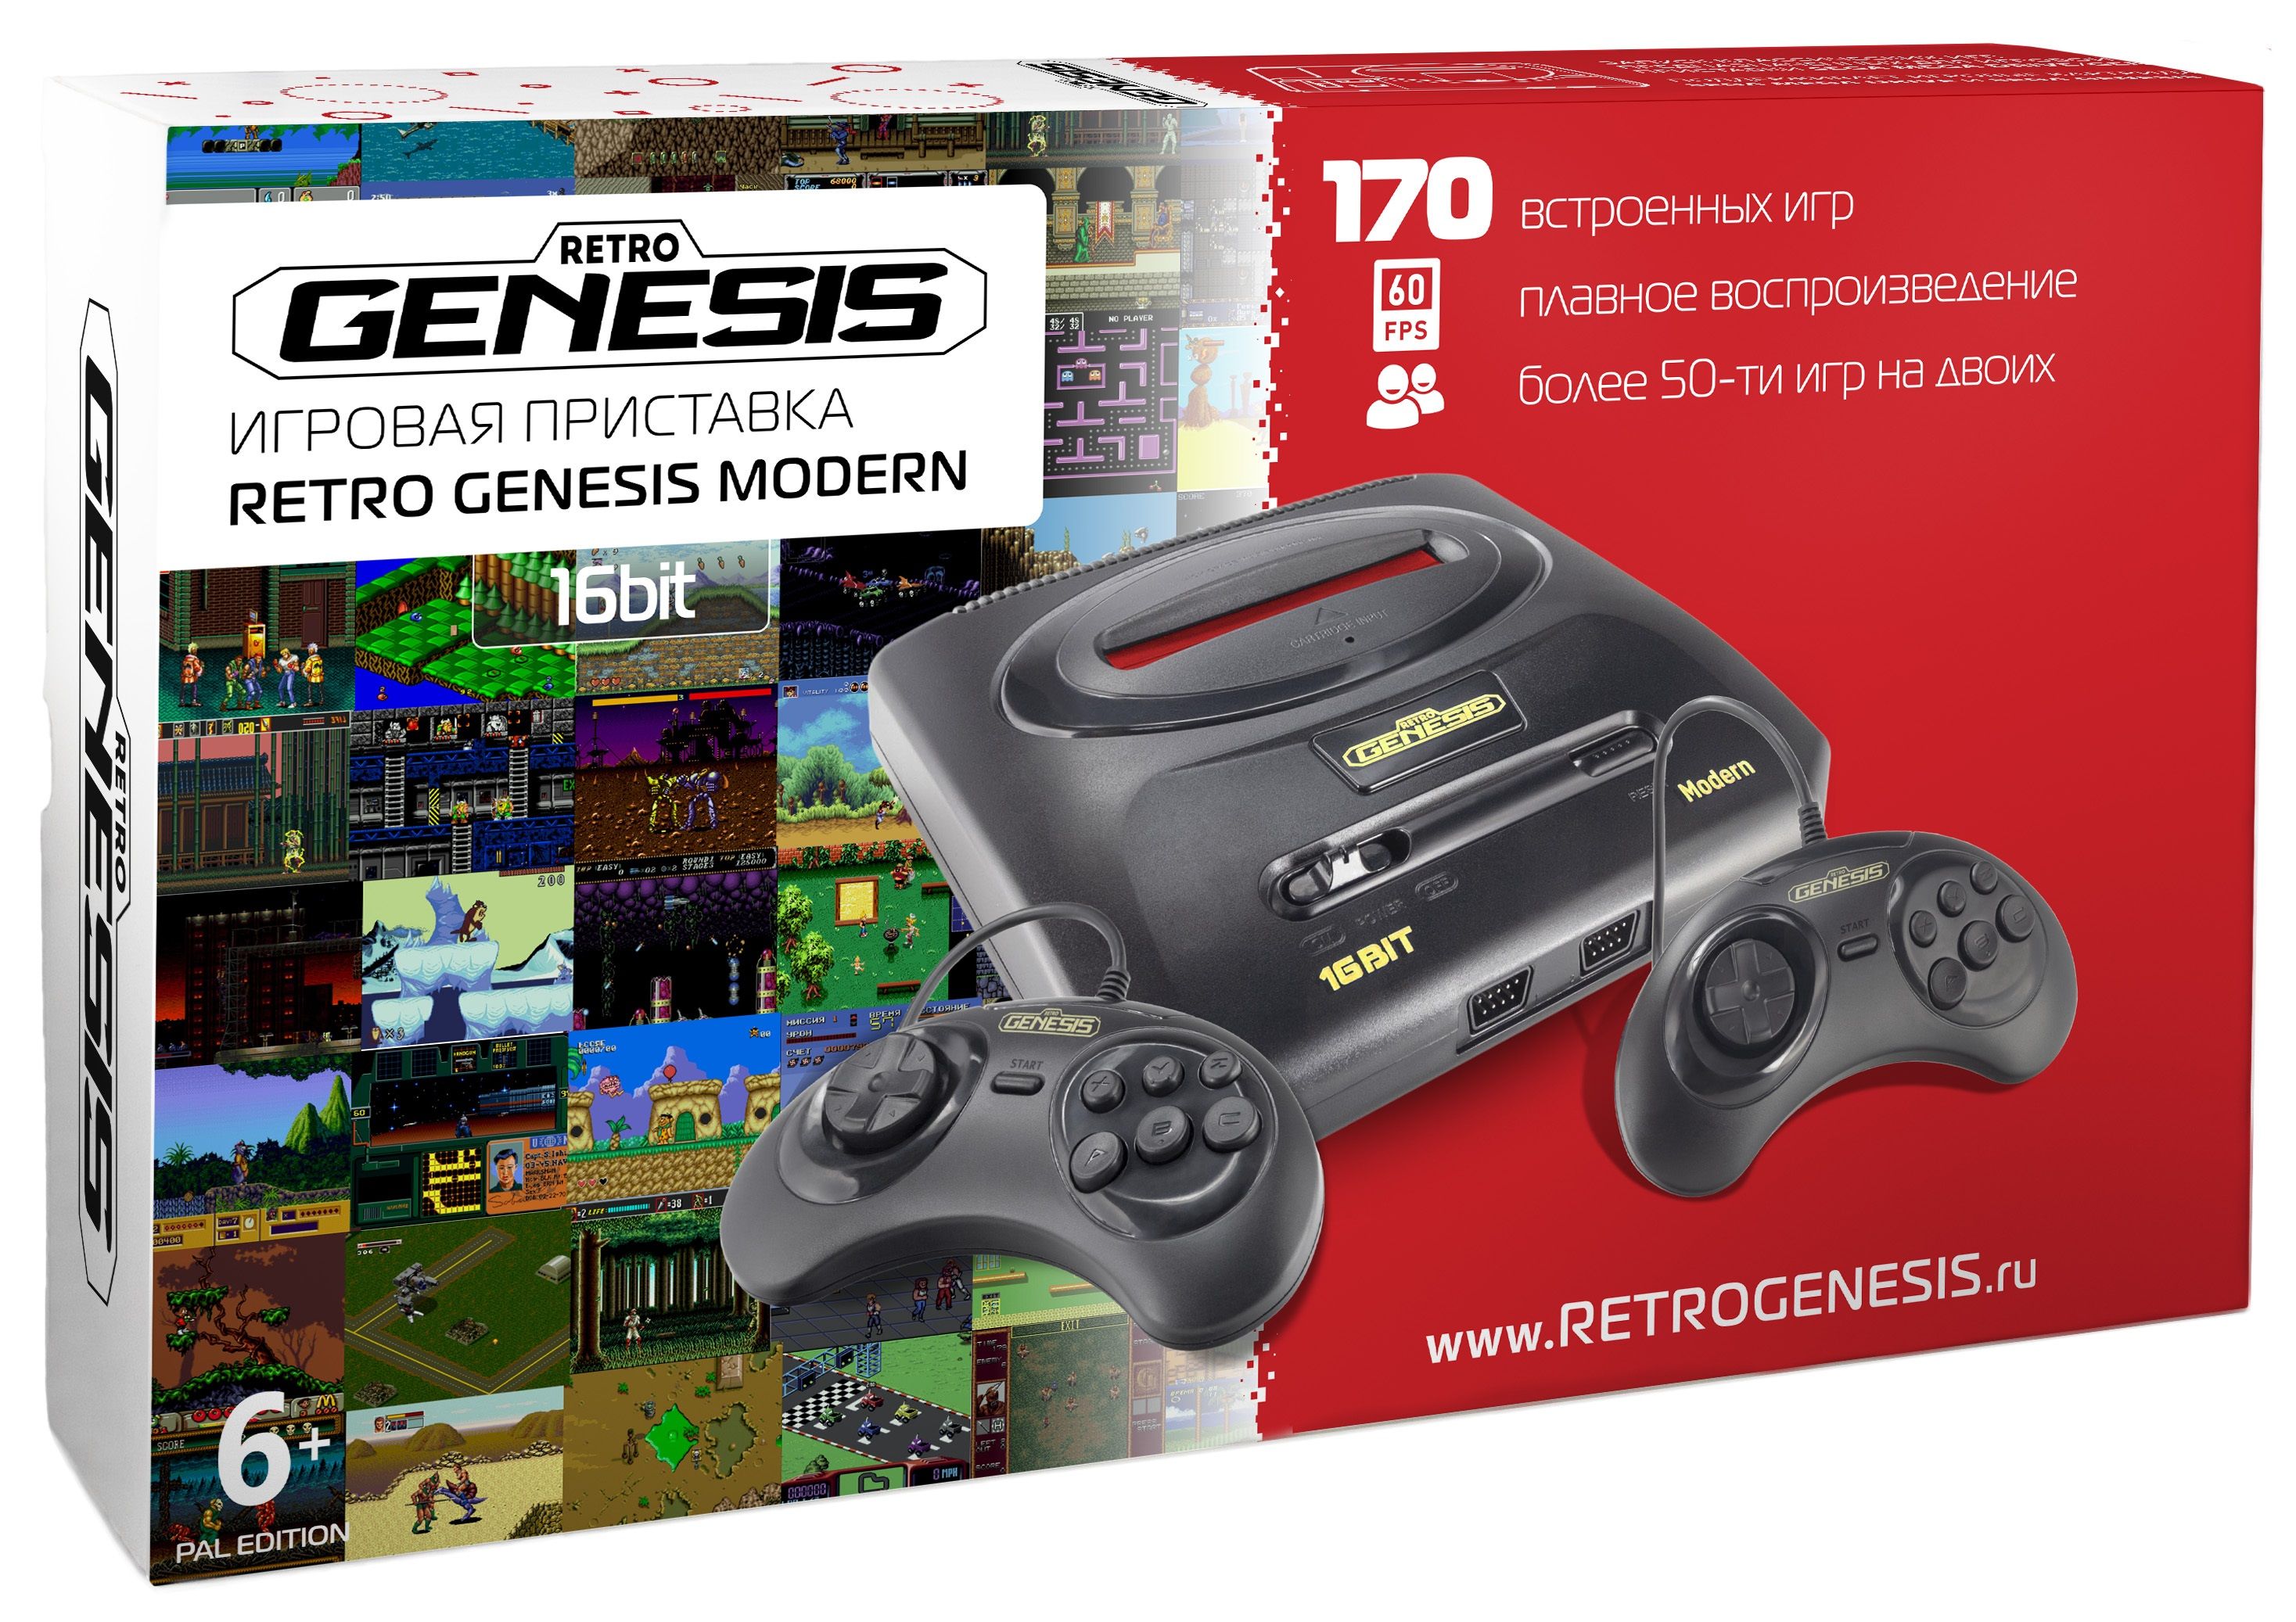 Генезис 16 бит. Игровая приставка Retro Genesis Modern + 170 игр. Игровая приставка Sega Retro Genesis Modern conskdn56 черный +170 игр. Приставка Genesis 16 bit 170 игр. Ретро Генезис игровая приставка 16 бит.